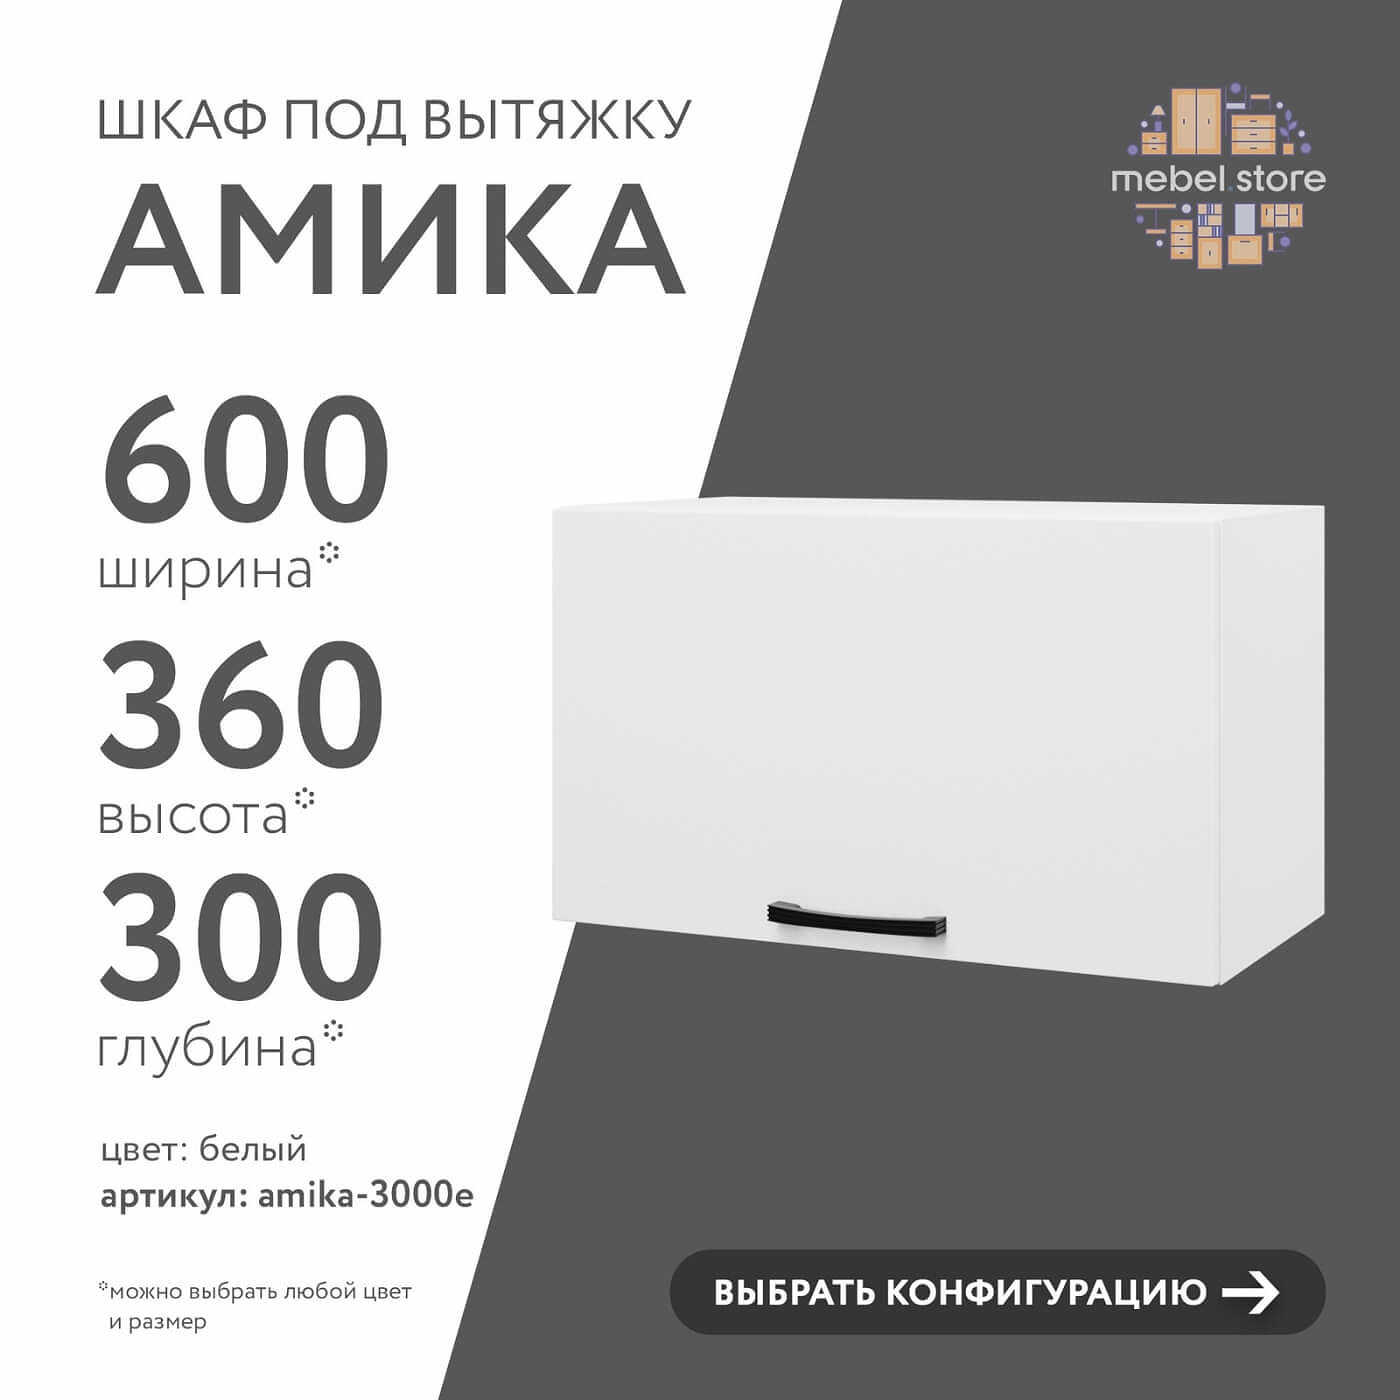 Шкаф под вытяжку Амика-3000e минимализм для кухни - фото 1 large